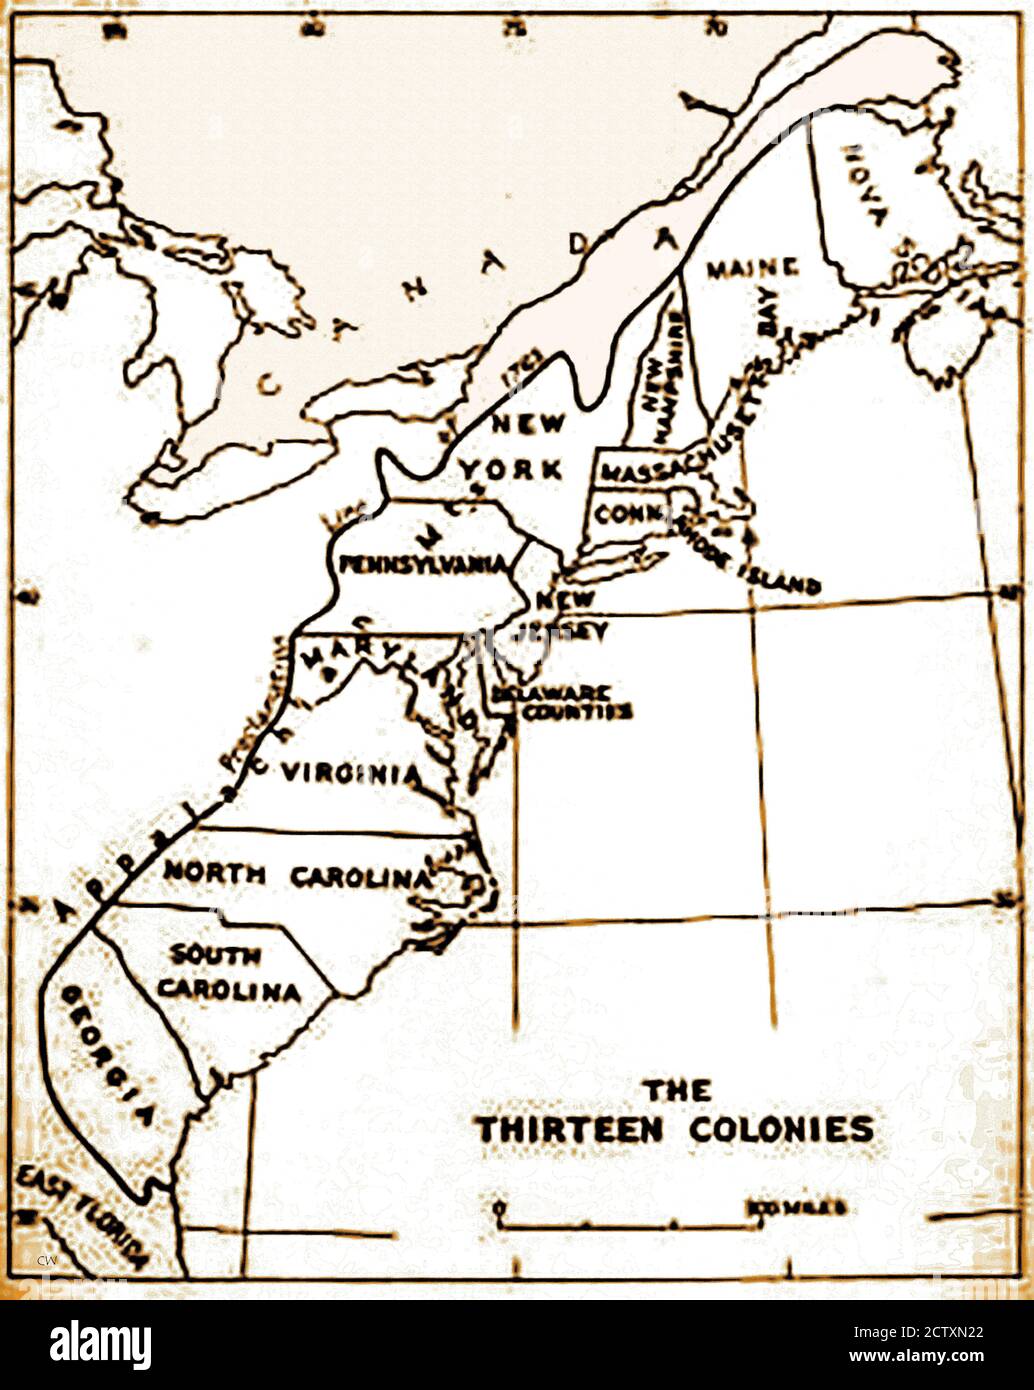 Eine historische Karte der ursprünglichen 13 Kolonien der USA. Spanien beanspruchte das gesamte Land vom Mississippi-Fluss bis zum Pazifischen Ozean, plus den Golf von Mexiko.der Vertrag von Paris schuf eine neue Nation im Jahr 1783 und verdoppelt die Größe der ursprünglichen 13 Kolonien, erweitert seine Grenzen bis zum Mississippi-Fluss. Delaware (ein Sklavenstaat) war der 1. Staat, der die US-Verfassung im Jahr 1787 ratifizierte, Pennsylvania war der 2. Im Dezember 1787 und erklärte sich selbst zu einem "Freien Staat". Tage später folgte Ndew Jersey. Stockfoto